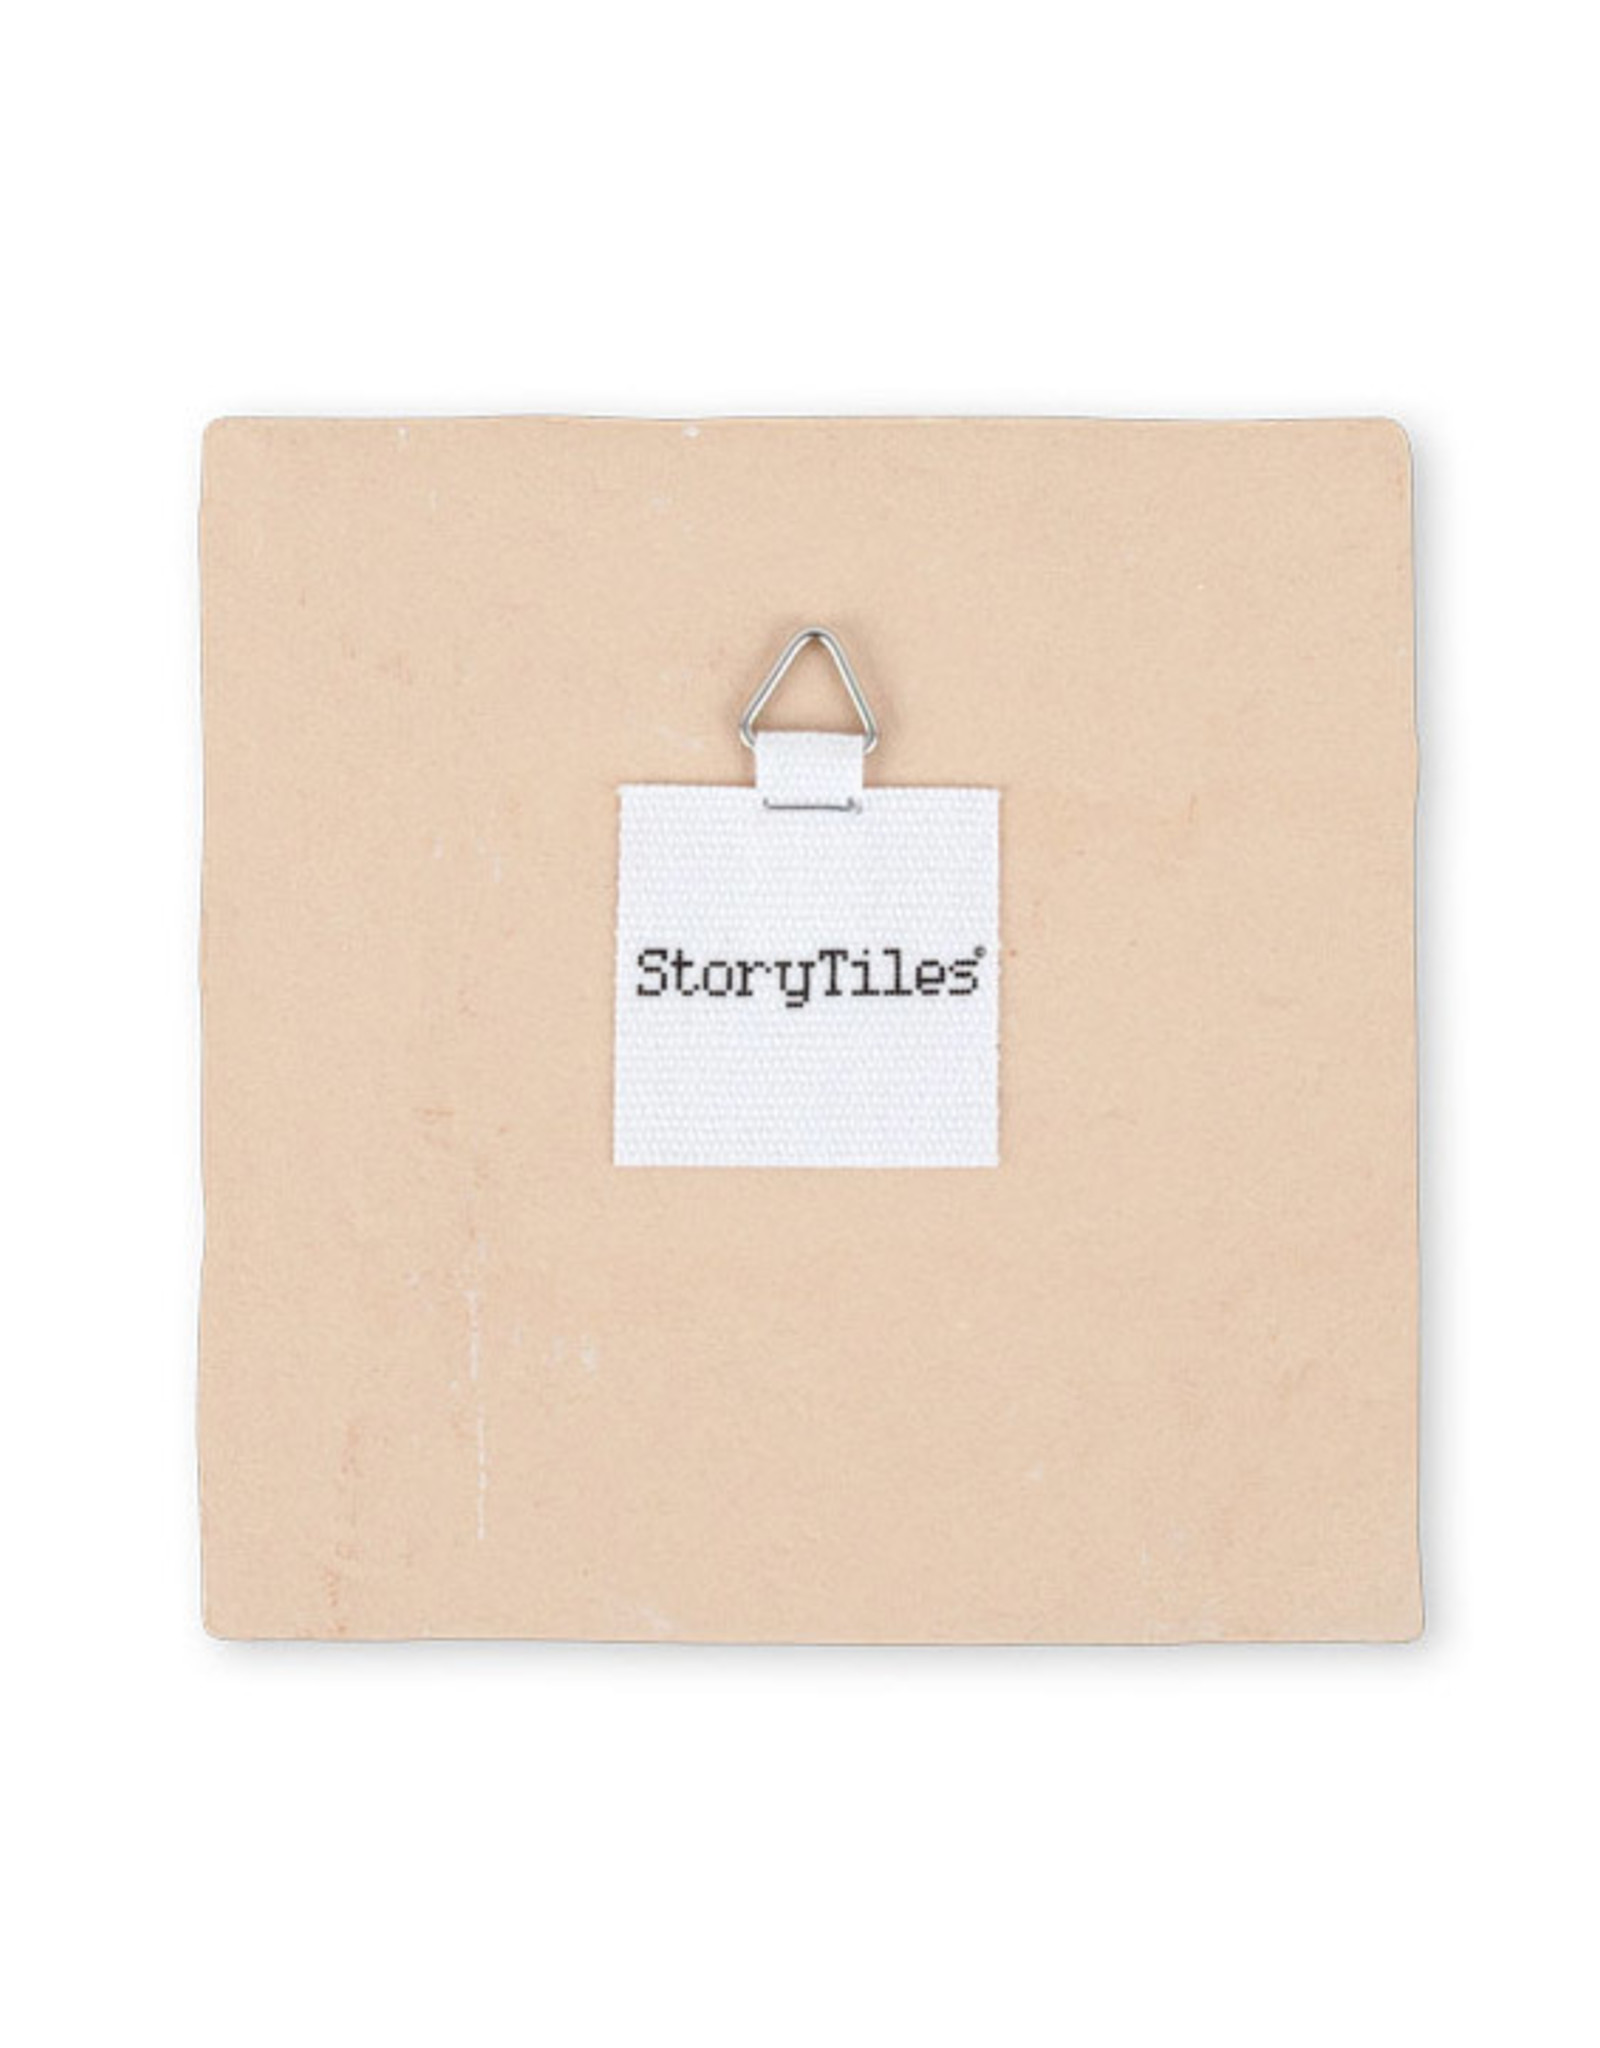 StoryTiles "wolf girl" Tile